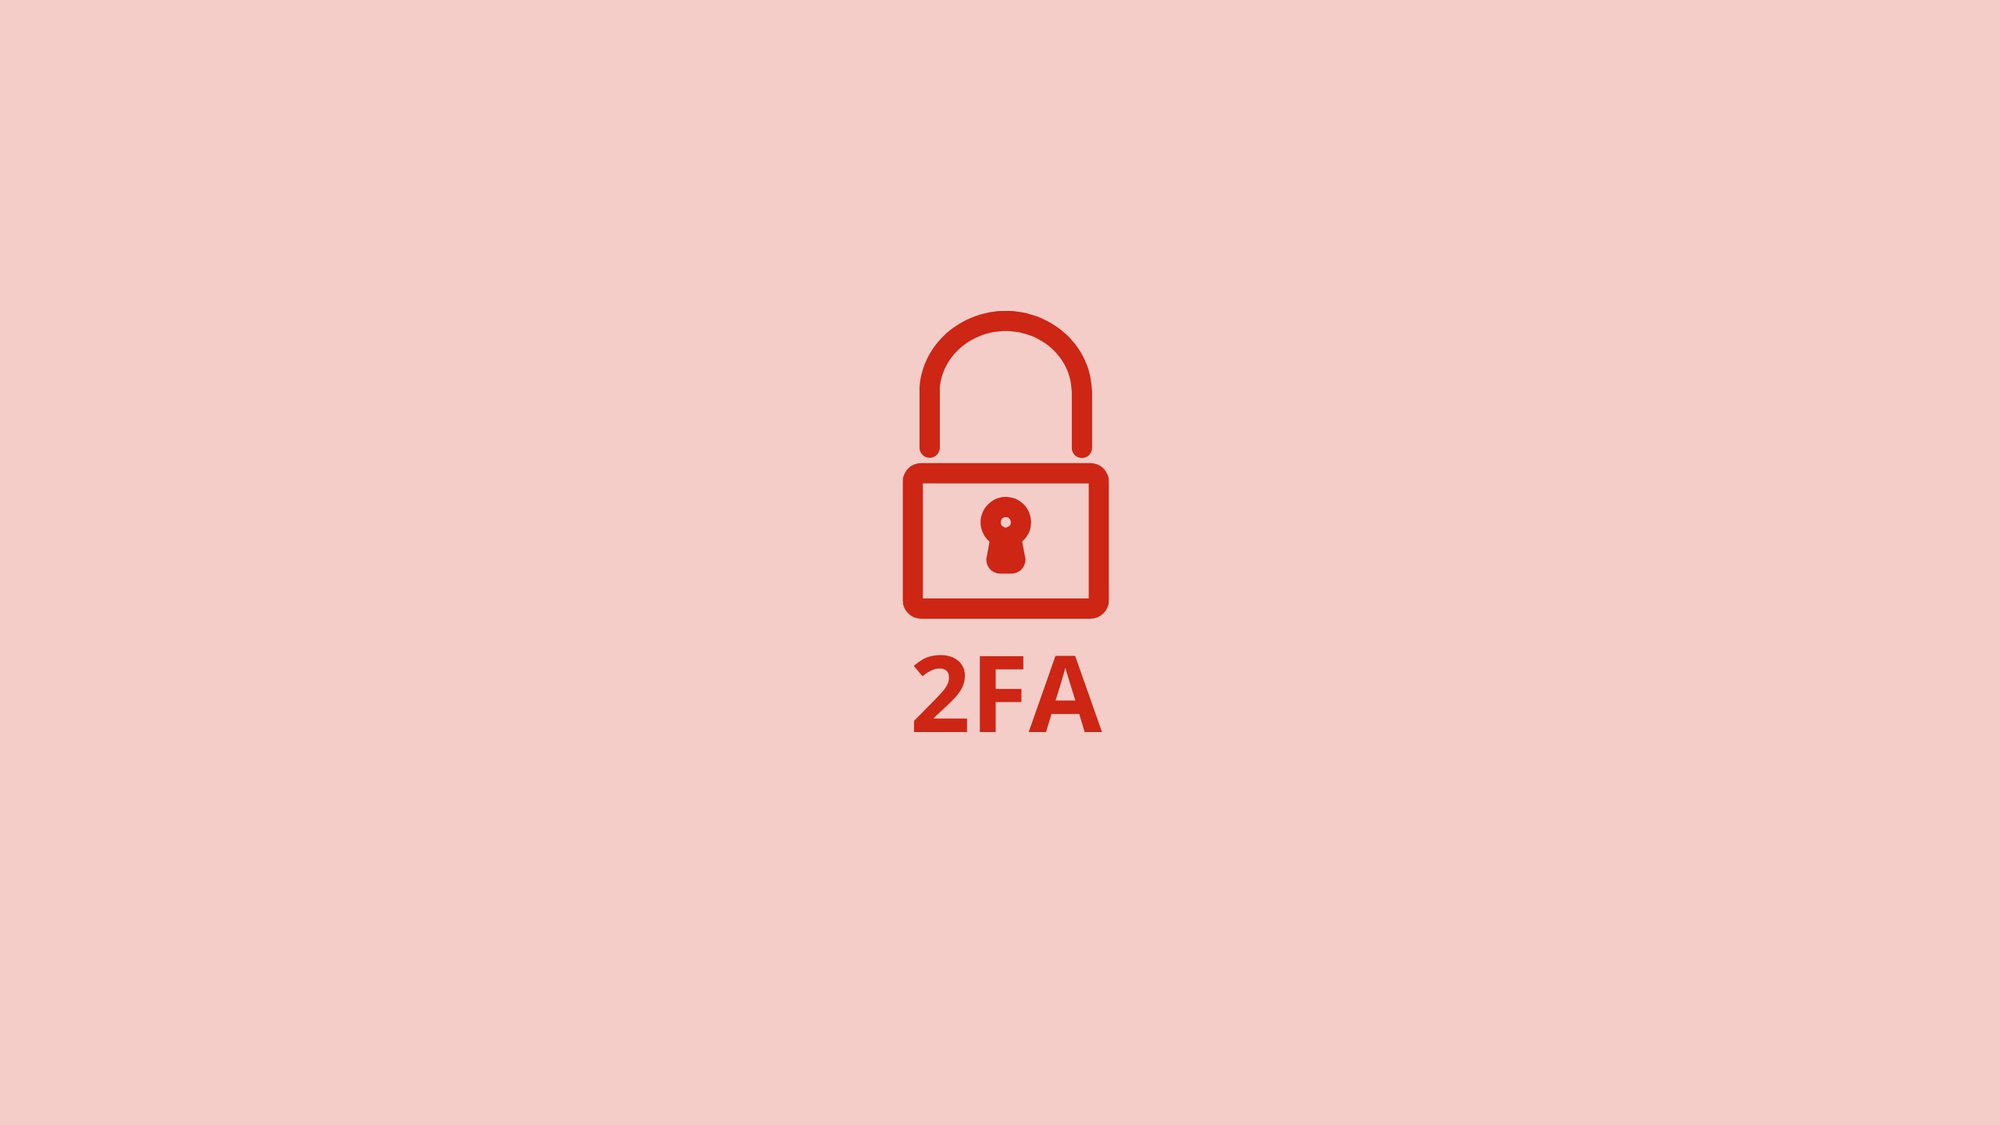 WordPress 2 Faktor Authentifizierung: Der umfassende Leitfaden zur einfachen Einrichtung der WordPress 2FA für mehr Sicherheit cover